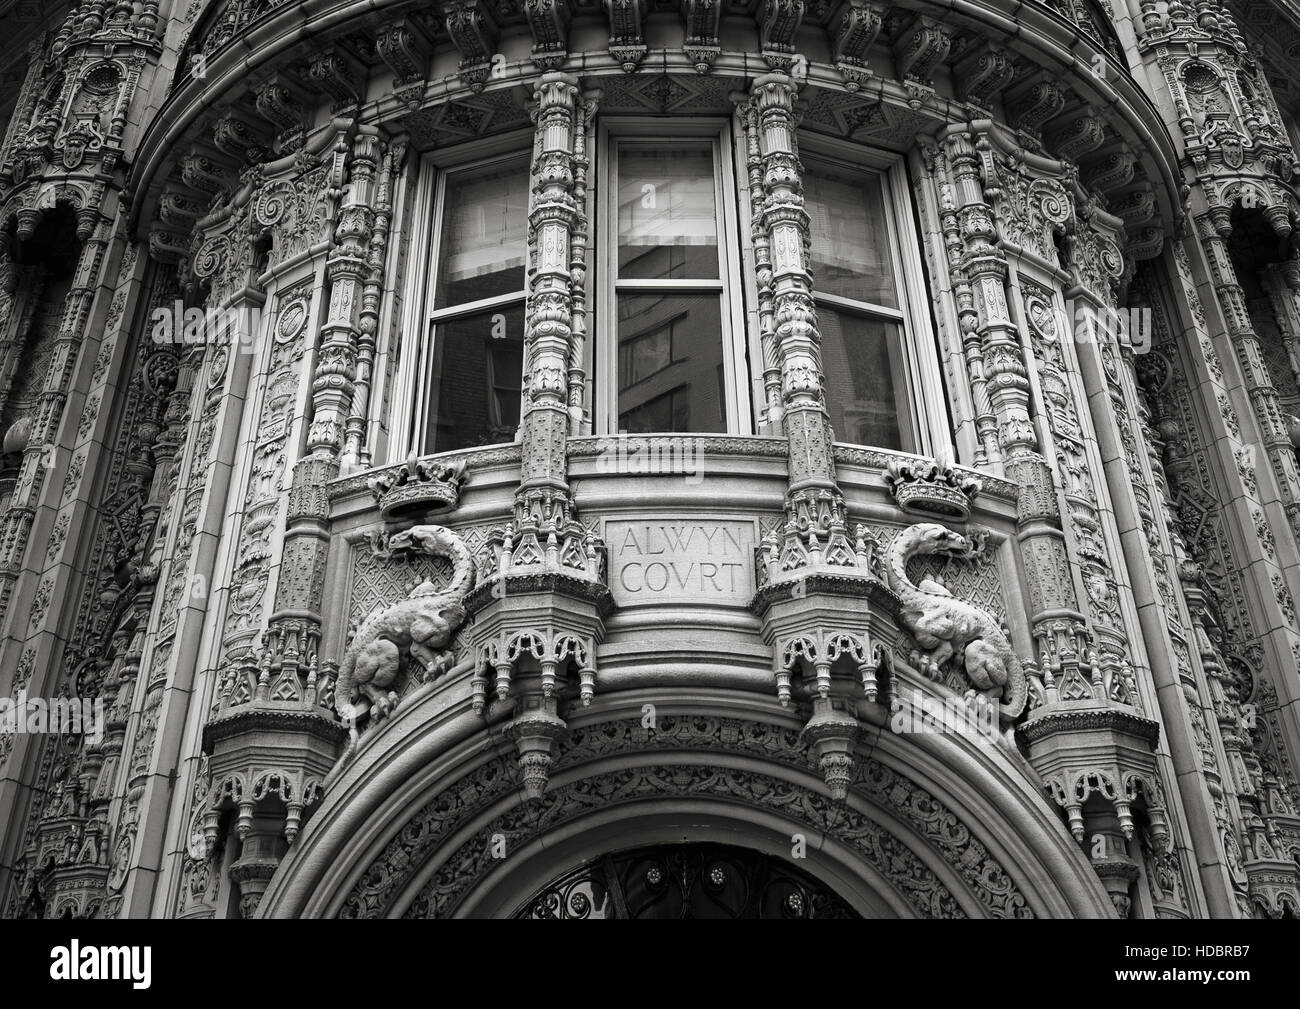 De magnifiques ornements architecturaux de la façade de l'immeuble de la Cour d'Alwyn. Noir et blanc, la ville de New York. Banque D'Images